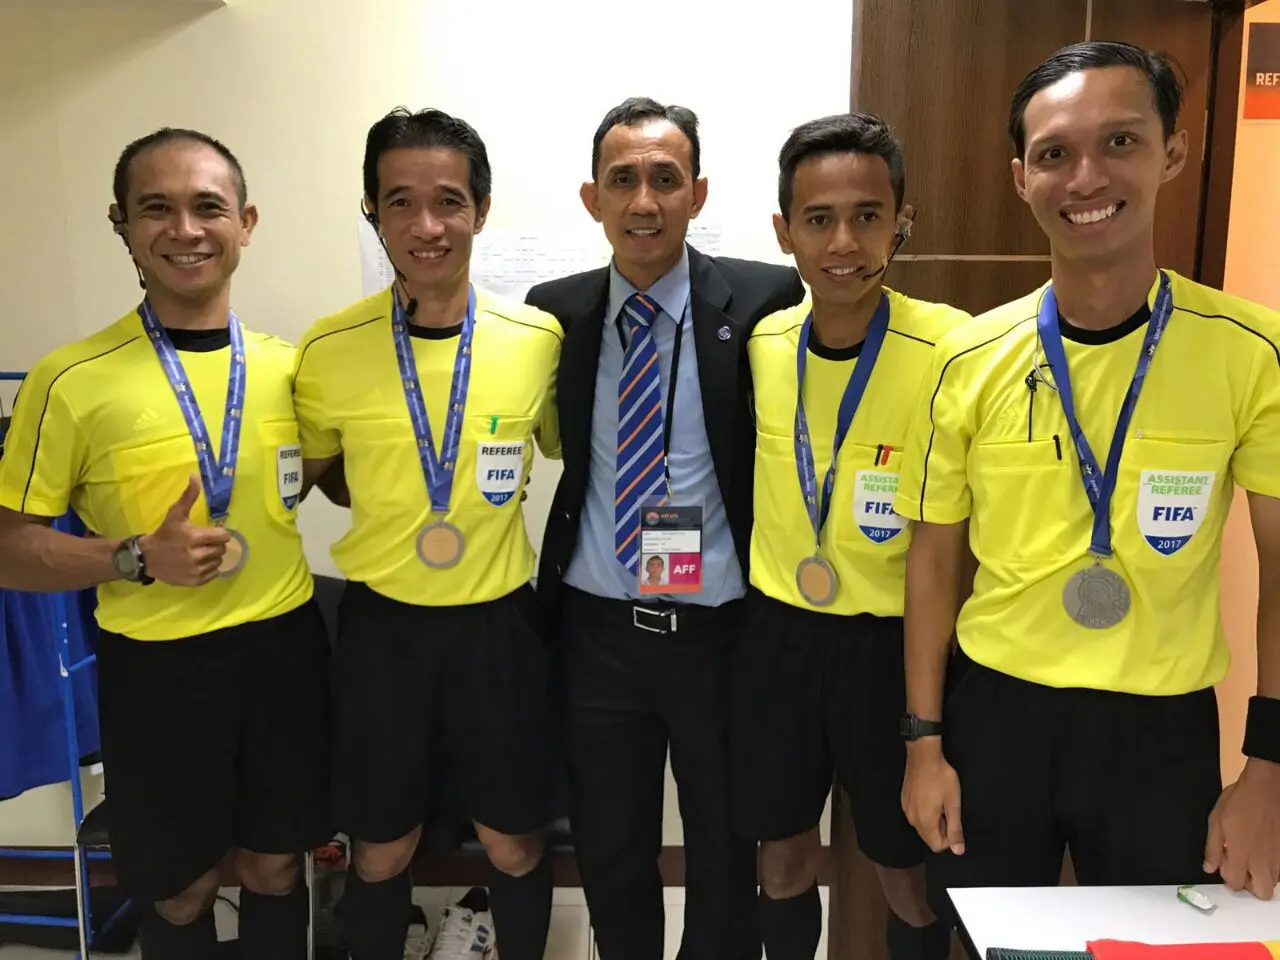 Oky Dwi Putra Sanjaya memimpin pertandingan final Piala AFF U-15 2017. (Bola.com/Dok. Pri)